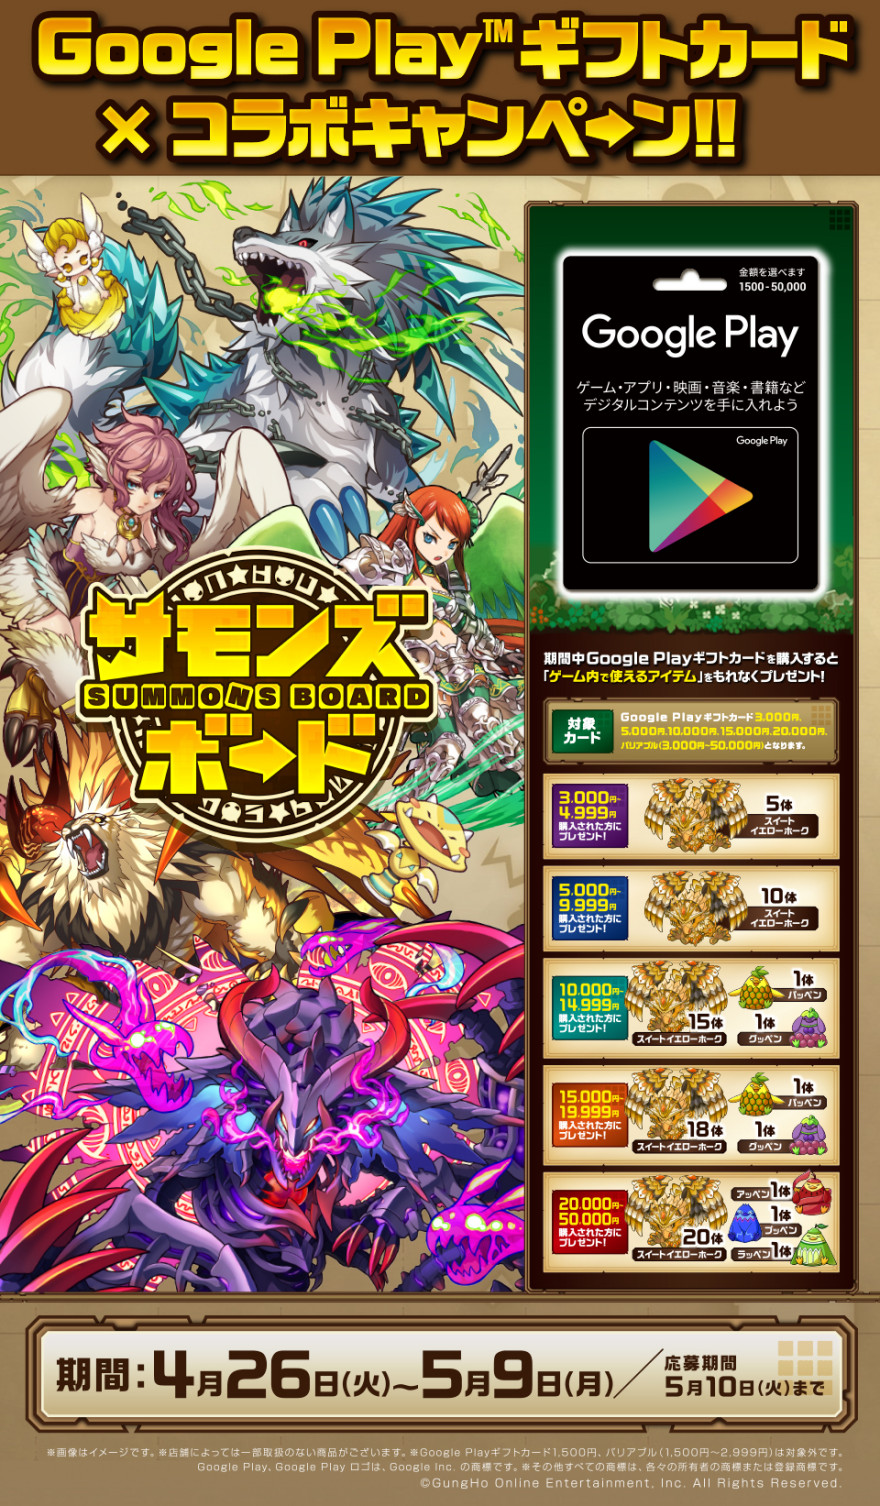 ゲオ / ドン・キホーテ Google Play × サモンズボードキャンペーン！お知らせ